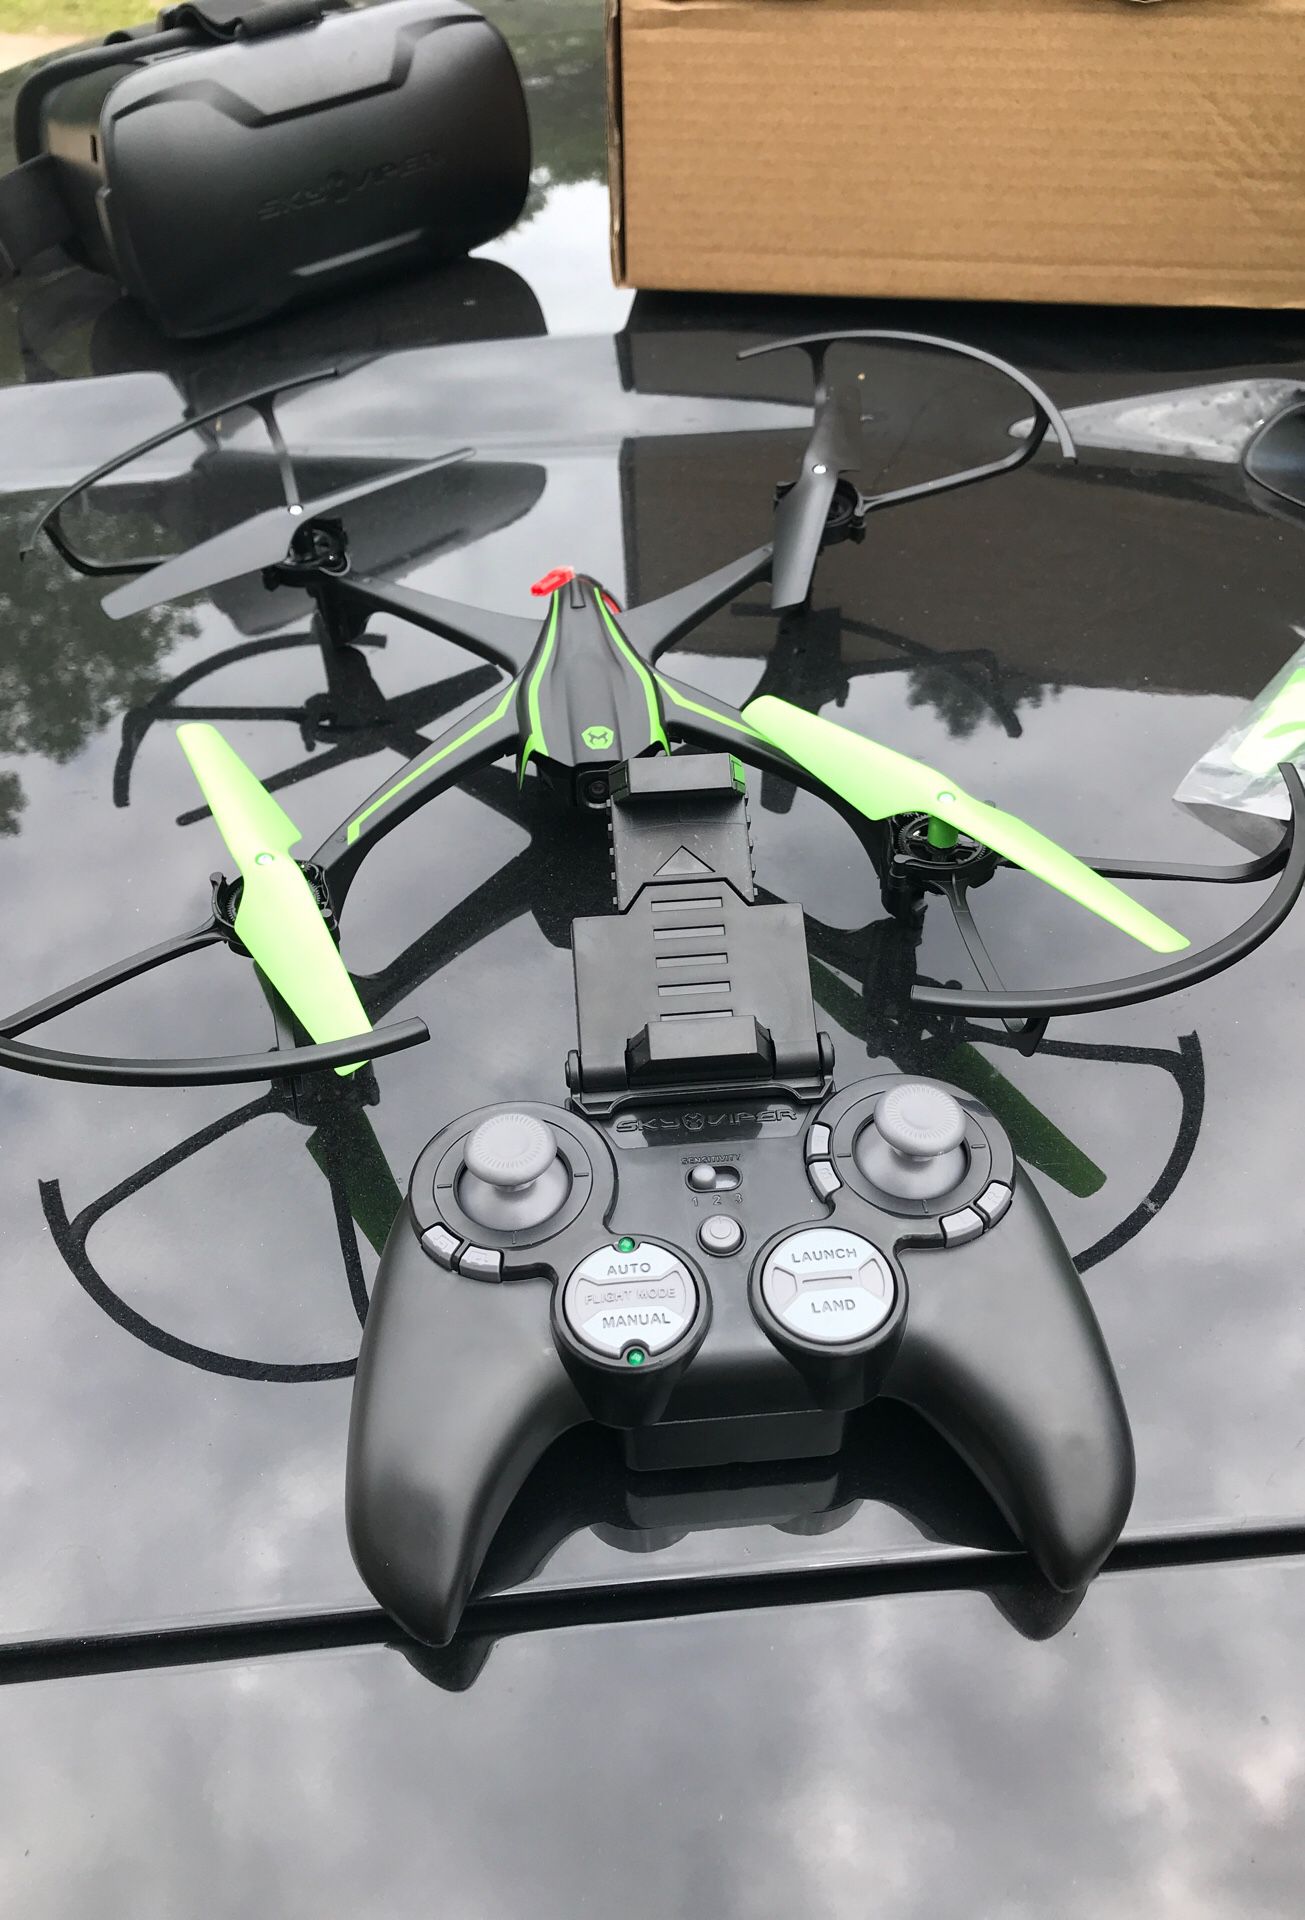 Skyviper drone